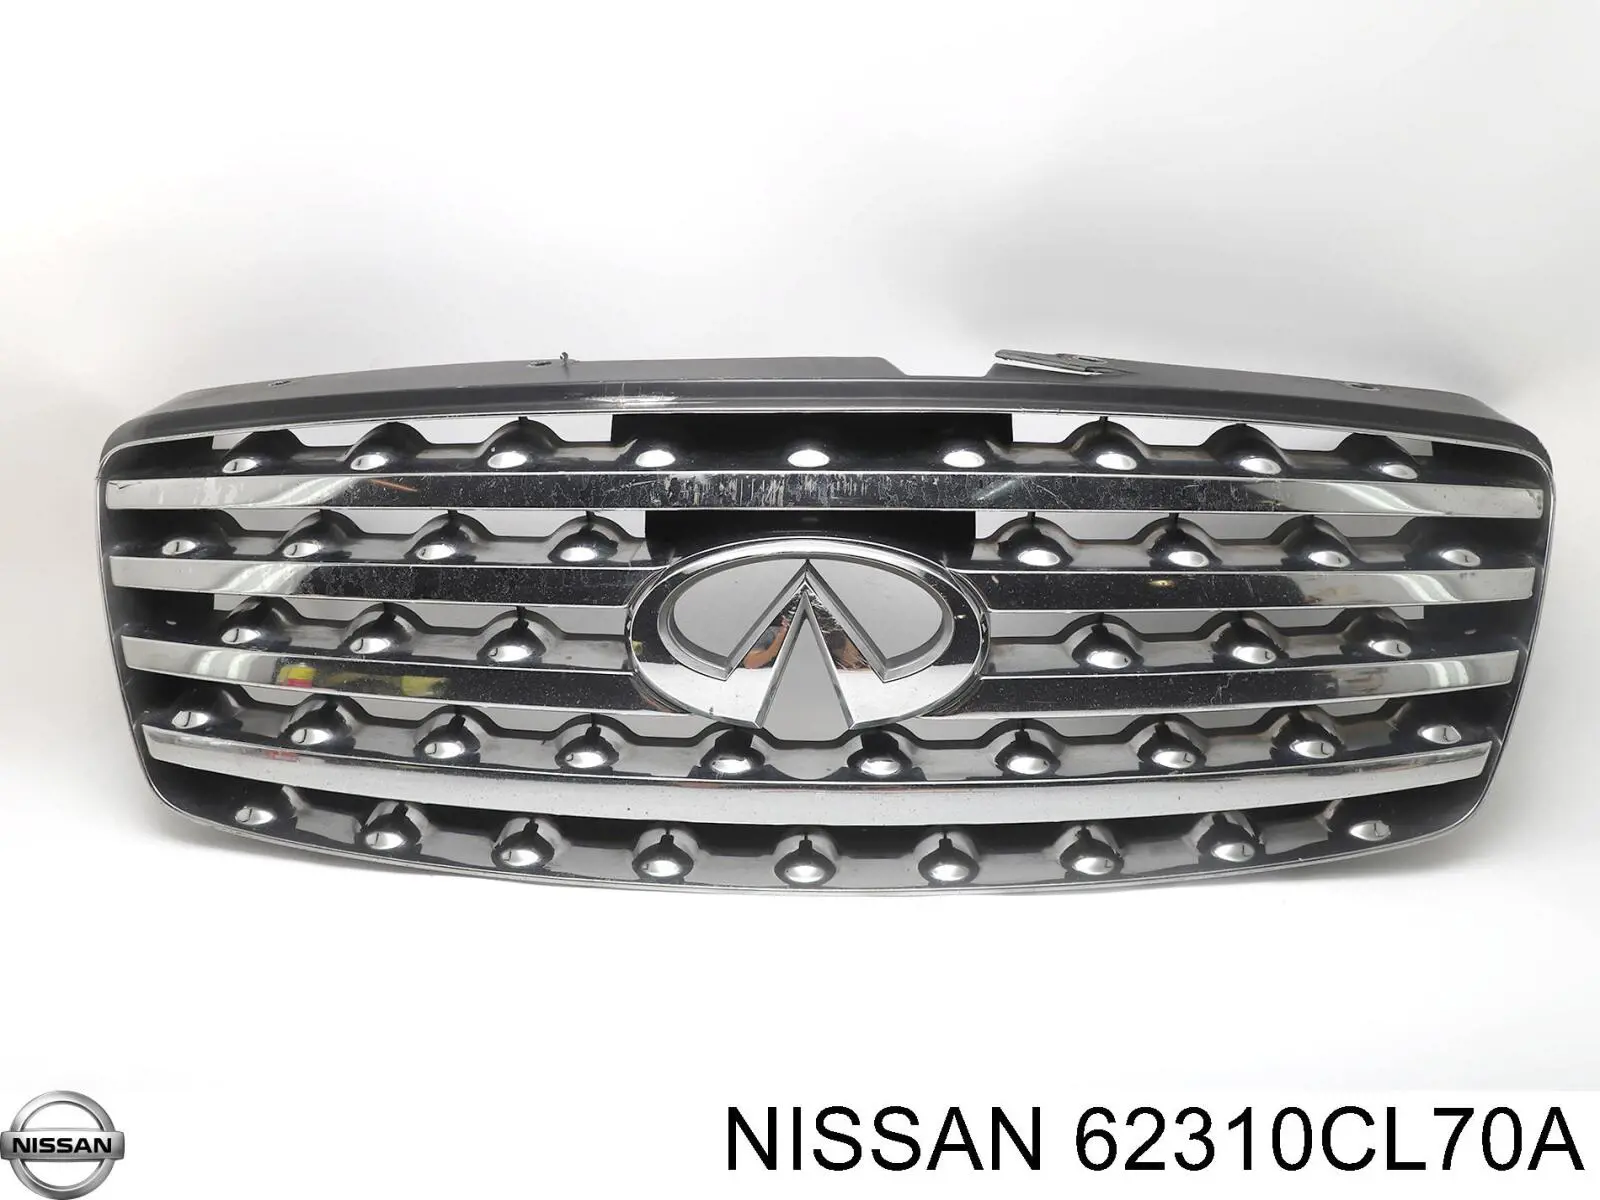 62310CL70A Nissan parrilla